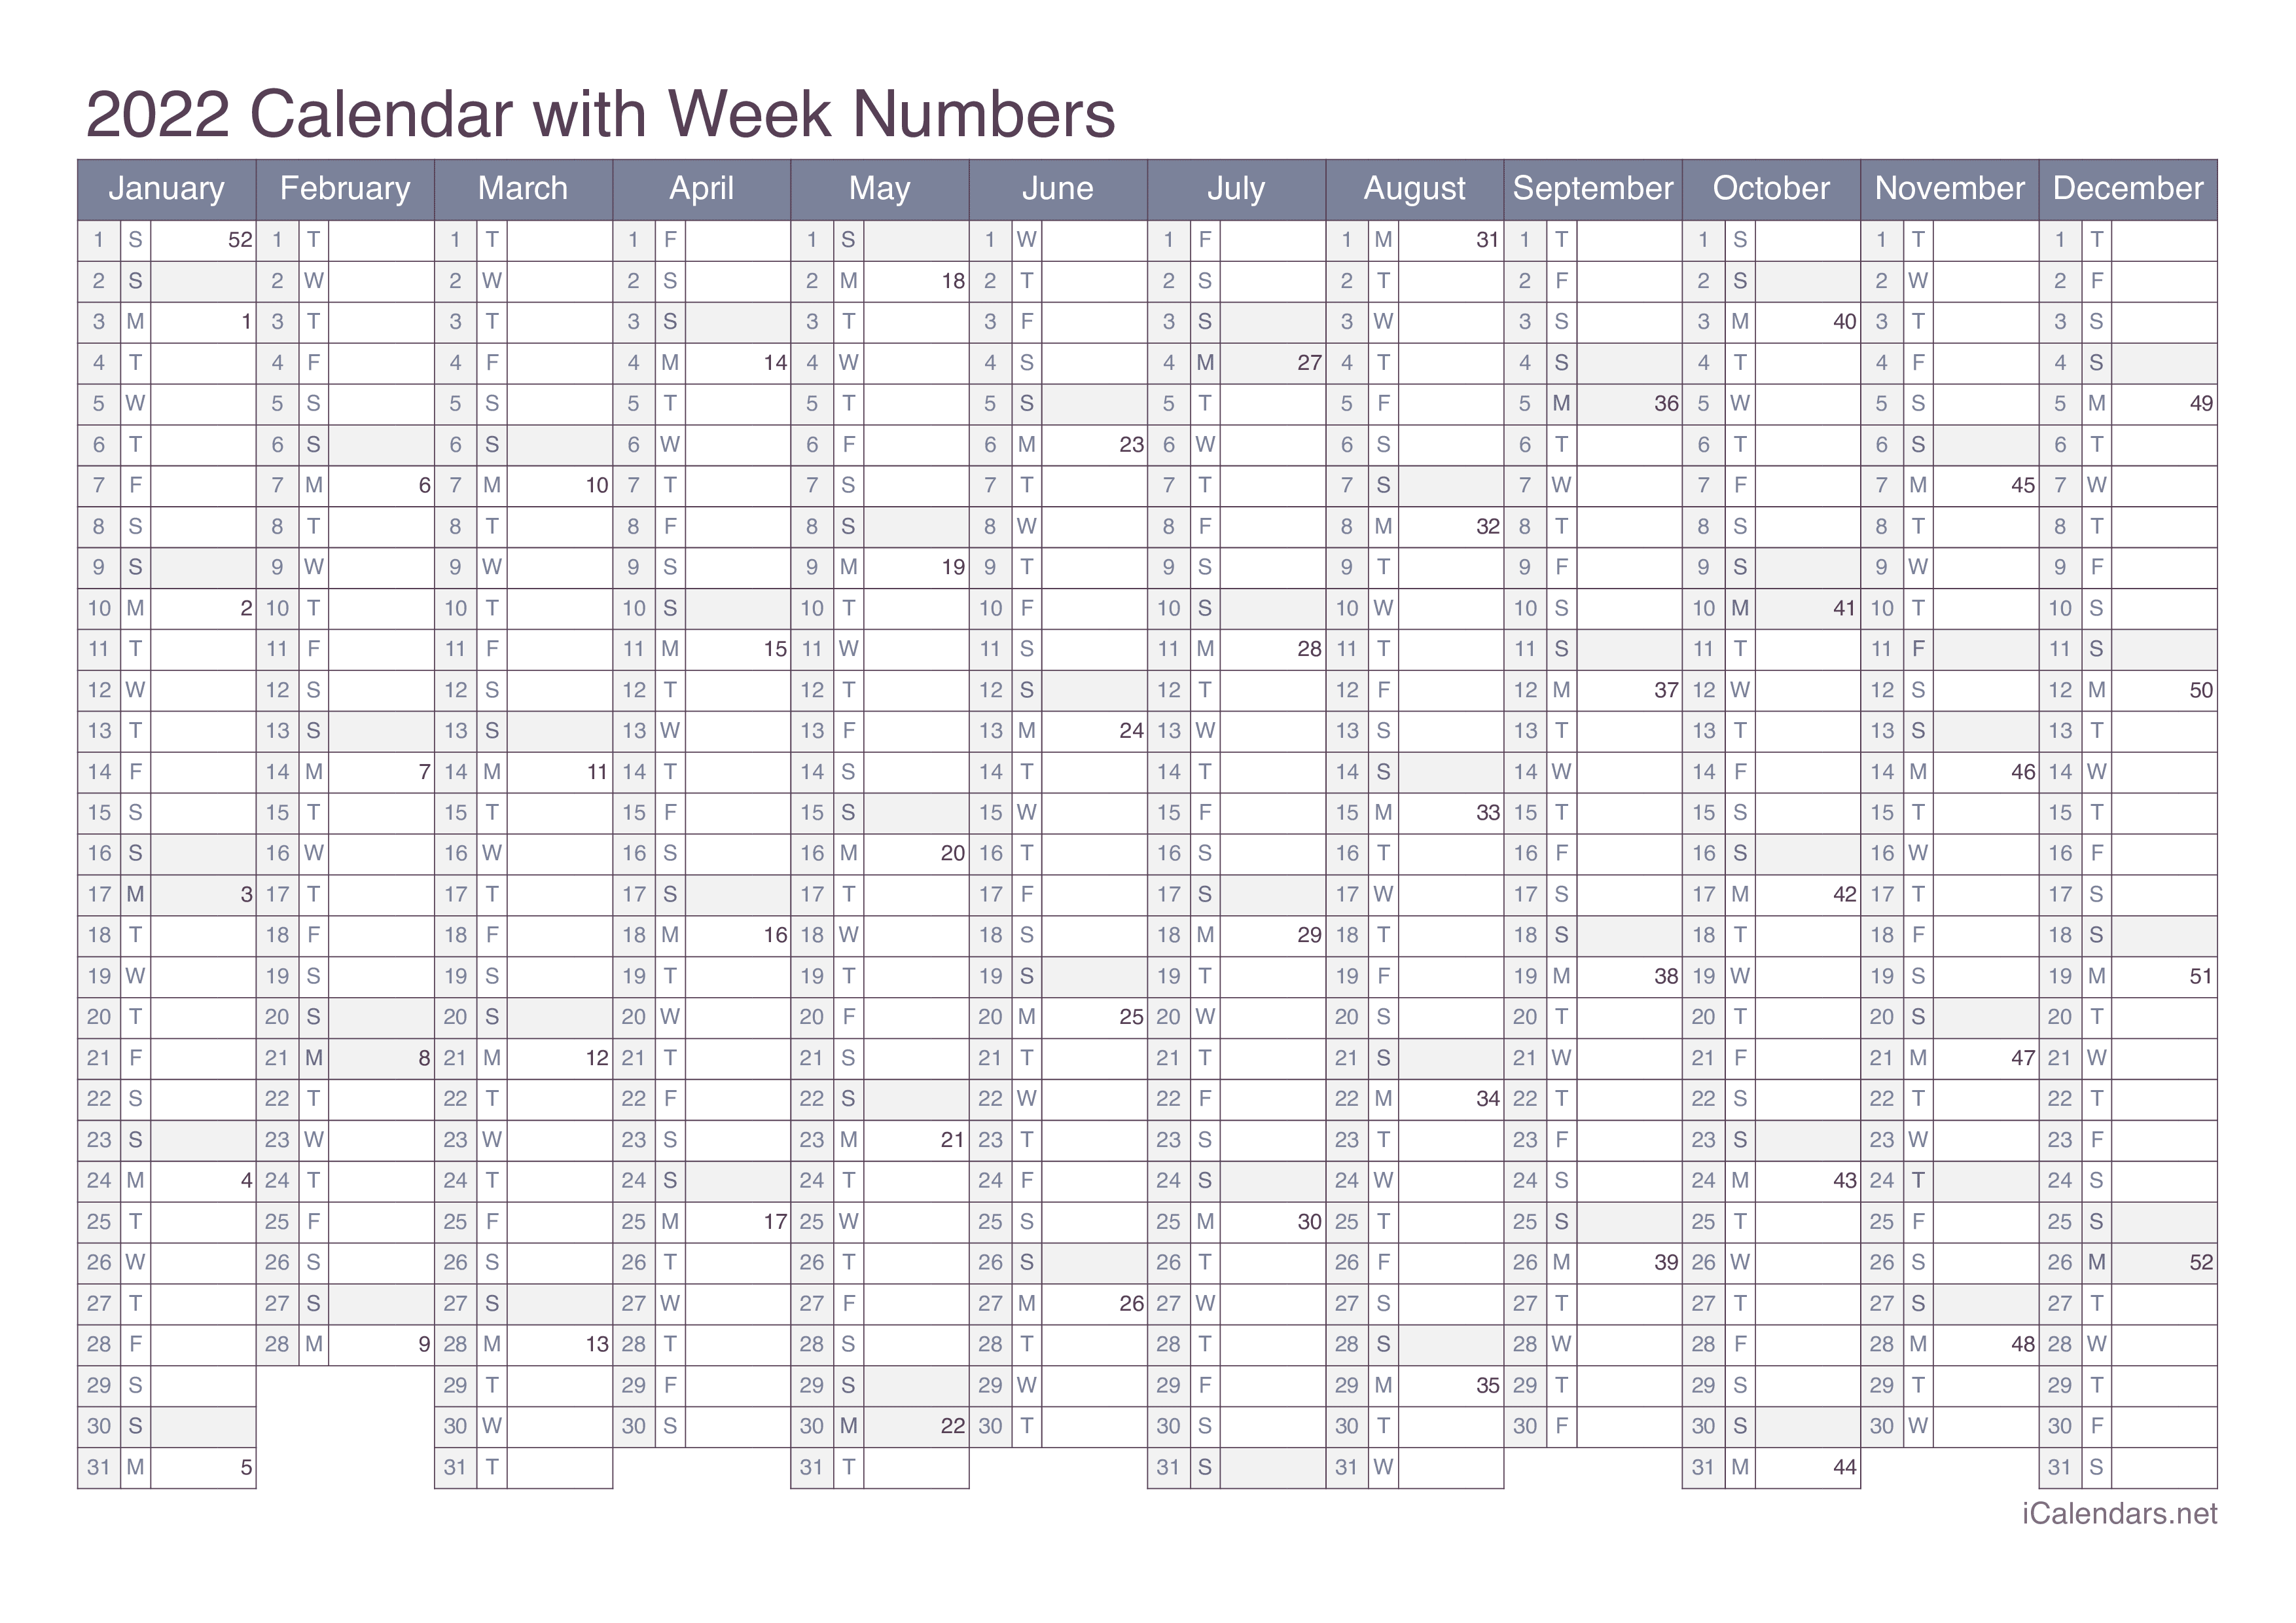 2022 Calendar with week numbers - Office